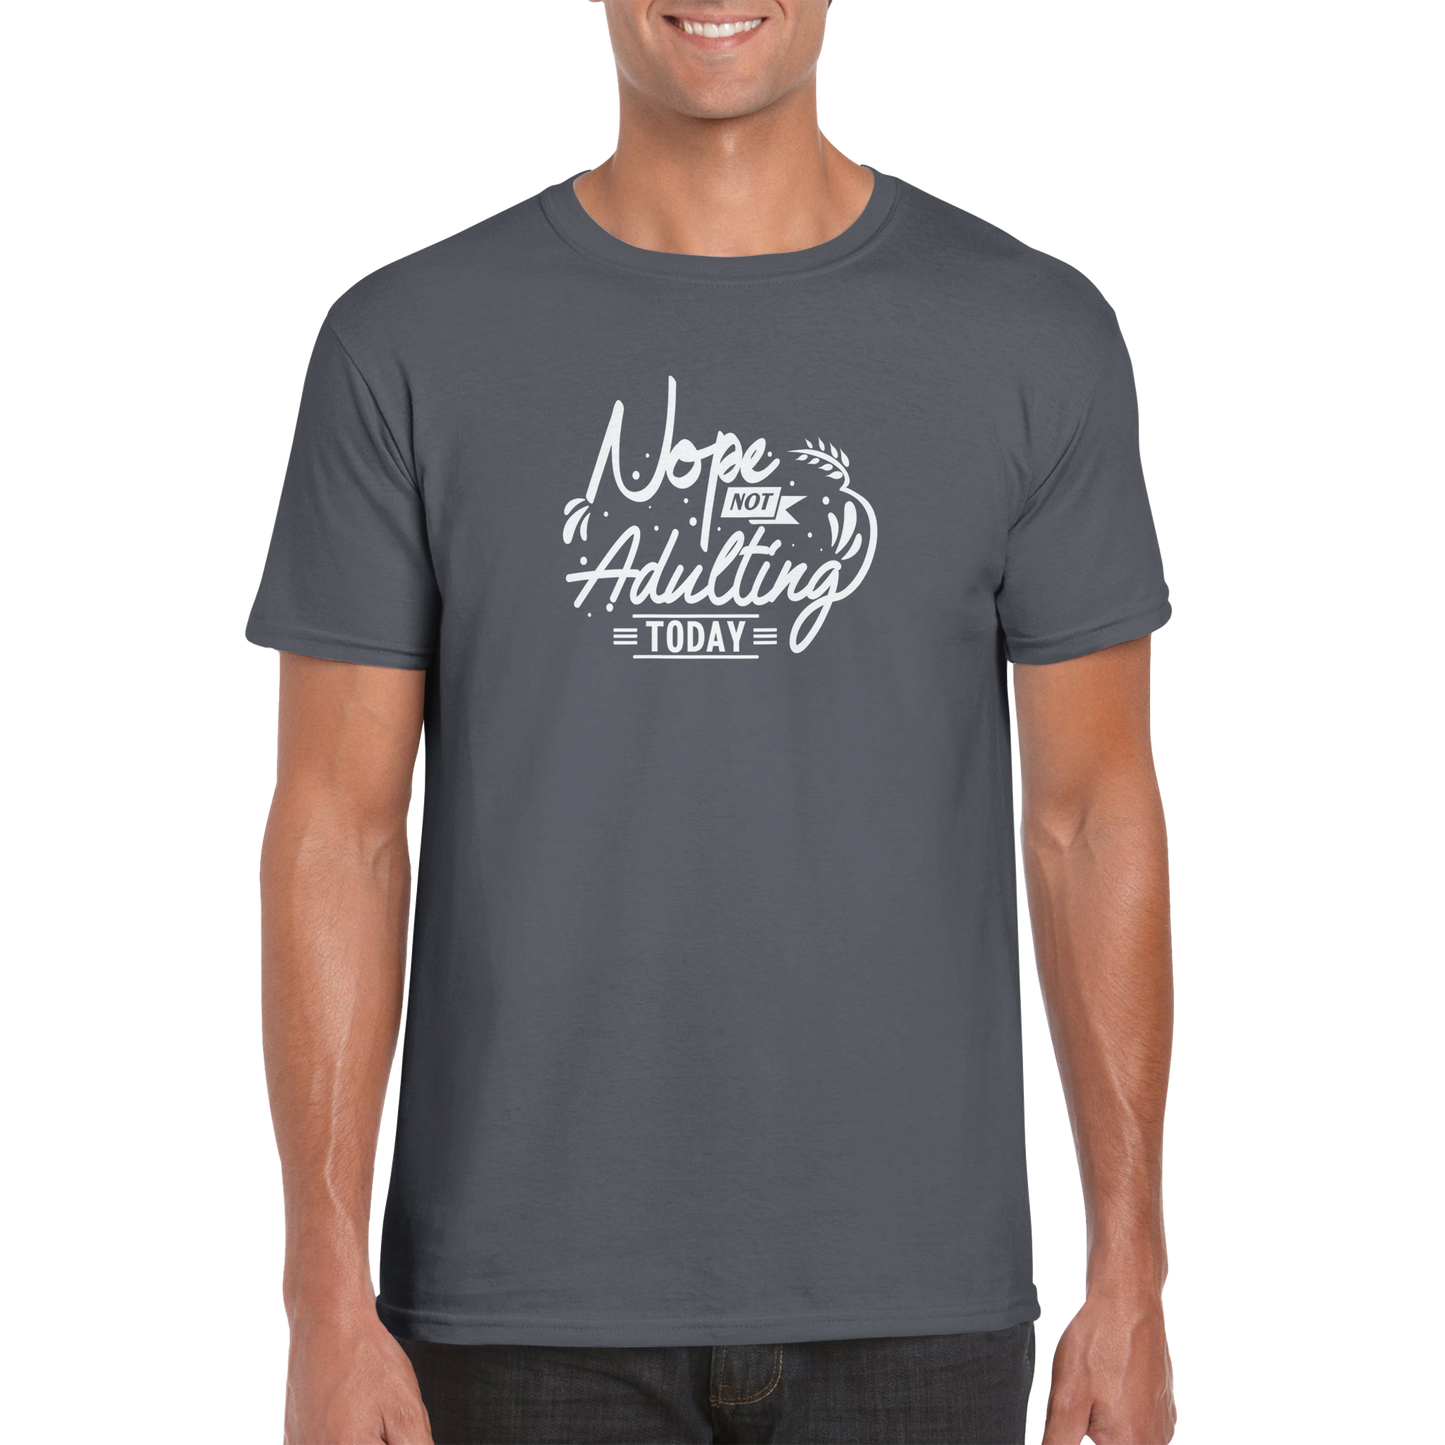 Not Adulting Sarcasm Shirt - Classic Unisex Crewneck T-shirt